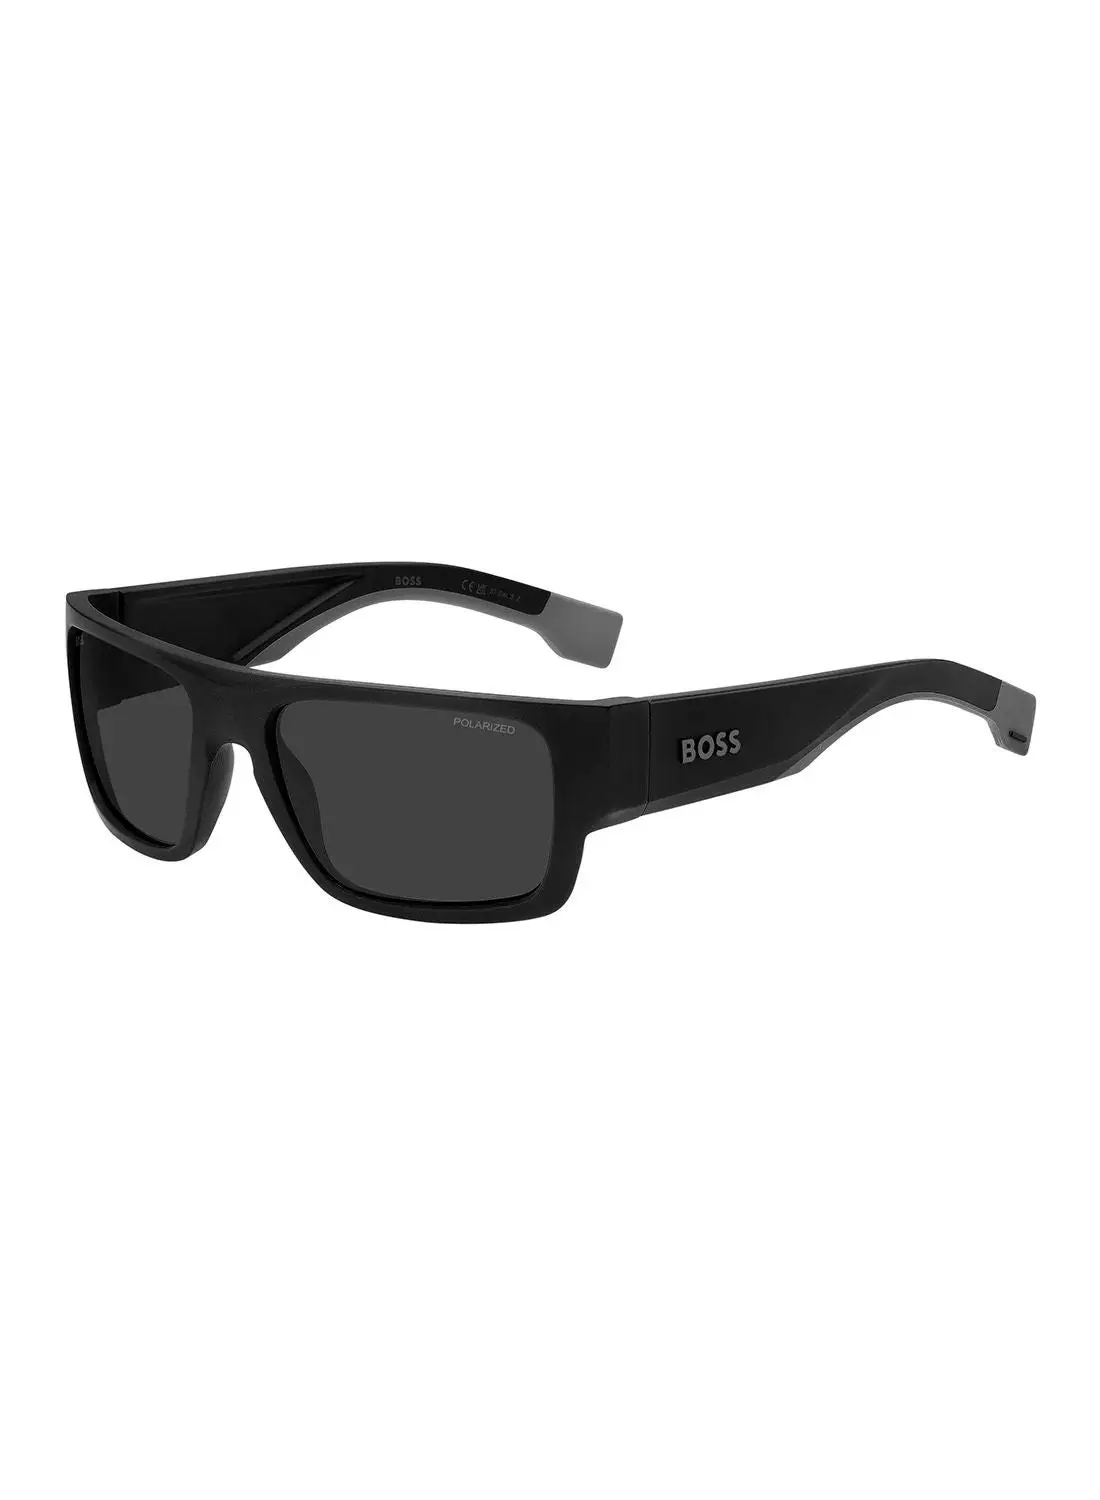 HUGO BOSS Men's UV Protection Sunglasses - Boss 1498/S Mtbk Grey 58 - Lens Size: 58 Mm